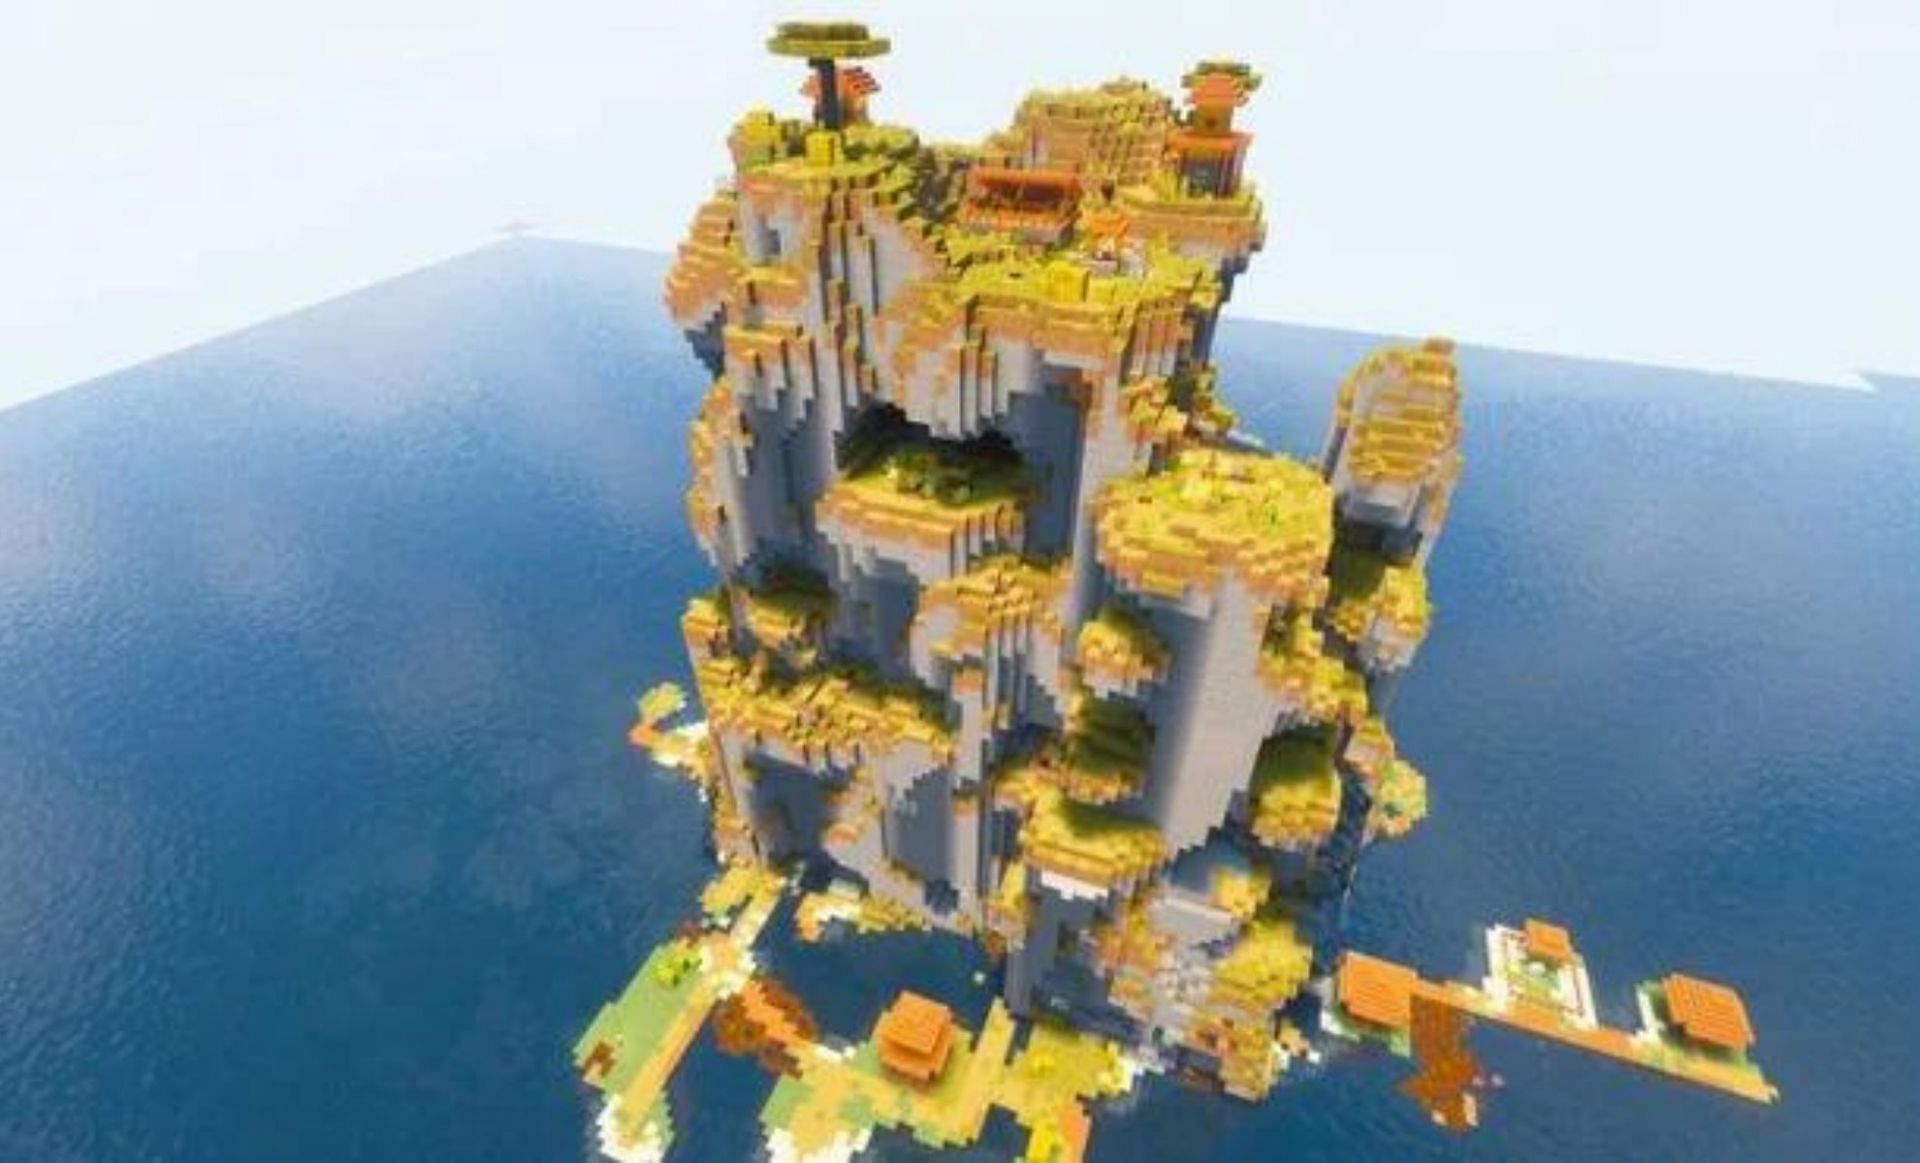 Vertical village (Image via Mojang)